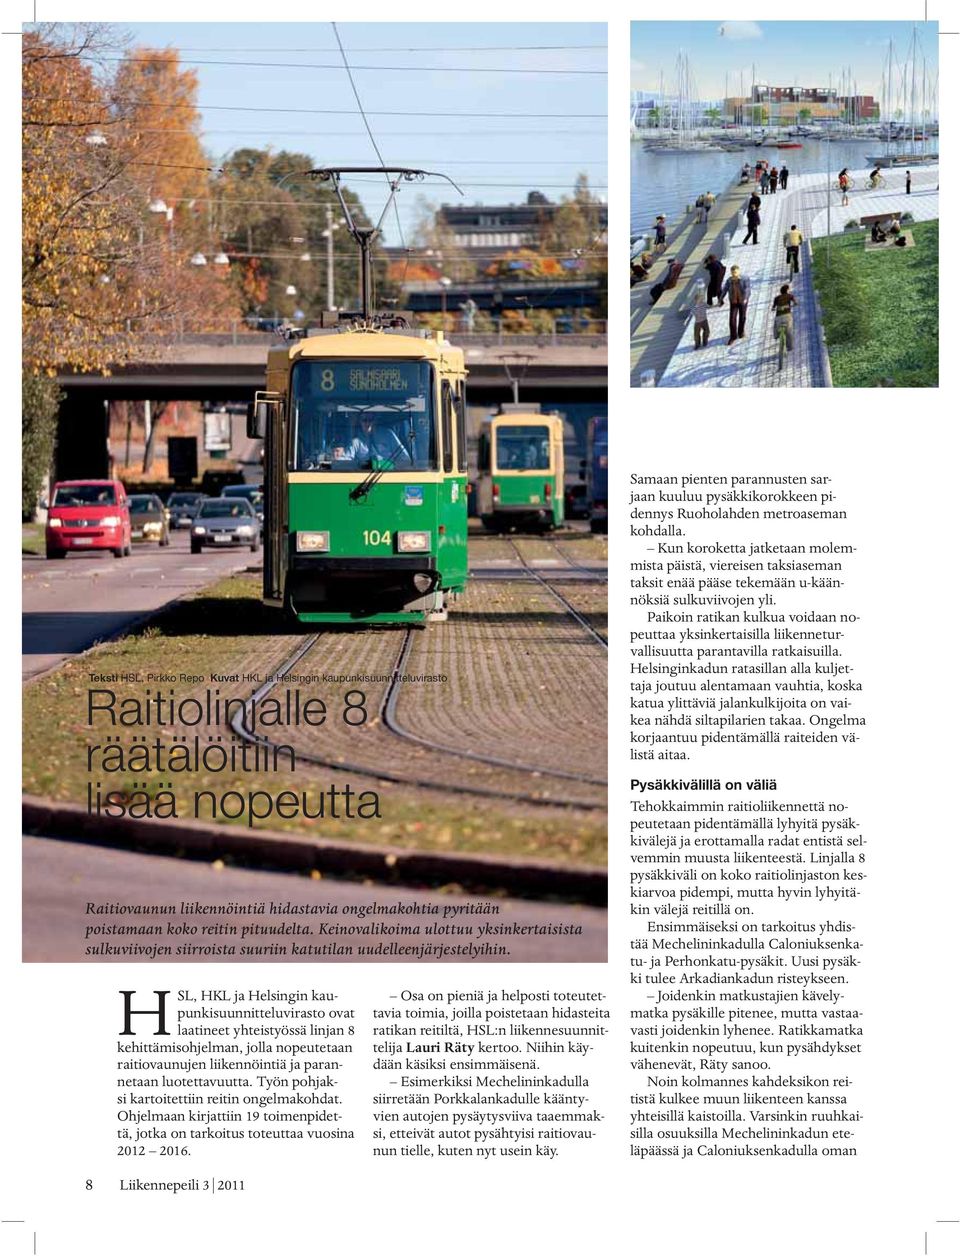 HSL, HKL ja Helsingin kaupunkisuunnitteluvirasto ovat laatineet yhteistyössä linjan 8 kehittämisohjelman, jolla nopeutetaan raitiovaunujen liikennöintiä ja parannetaan luotettavuutta.